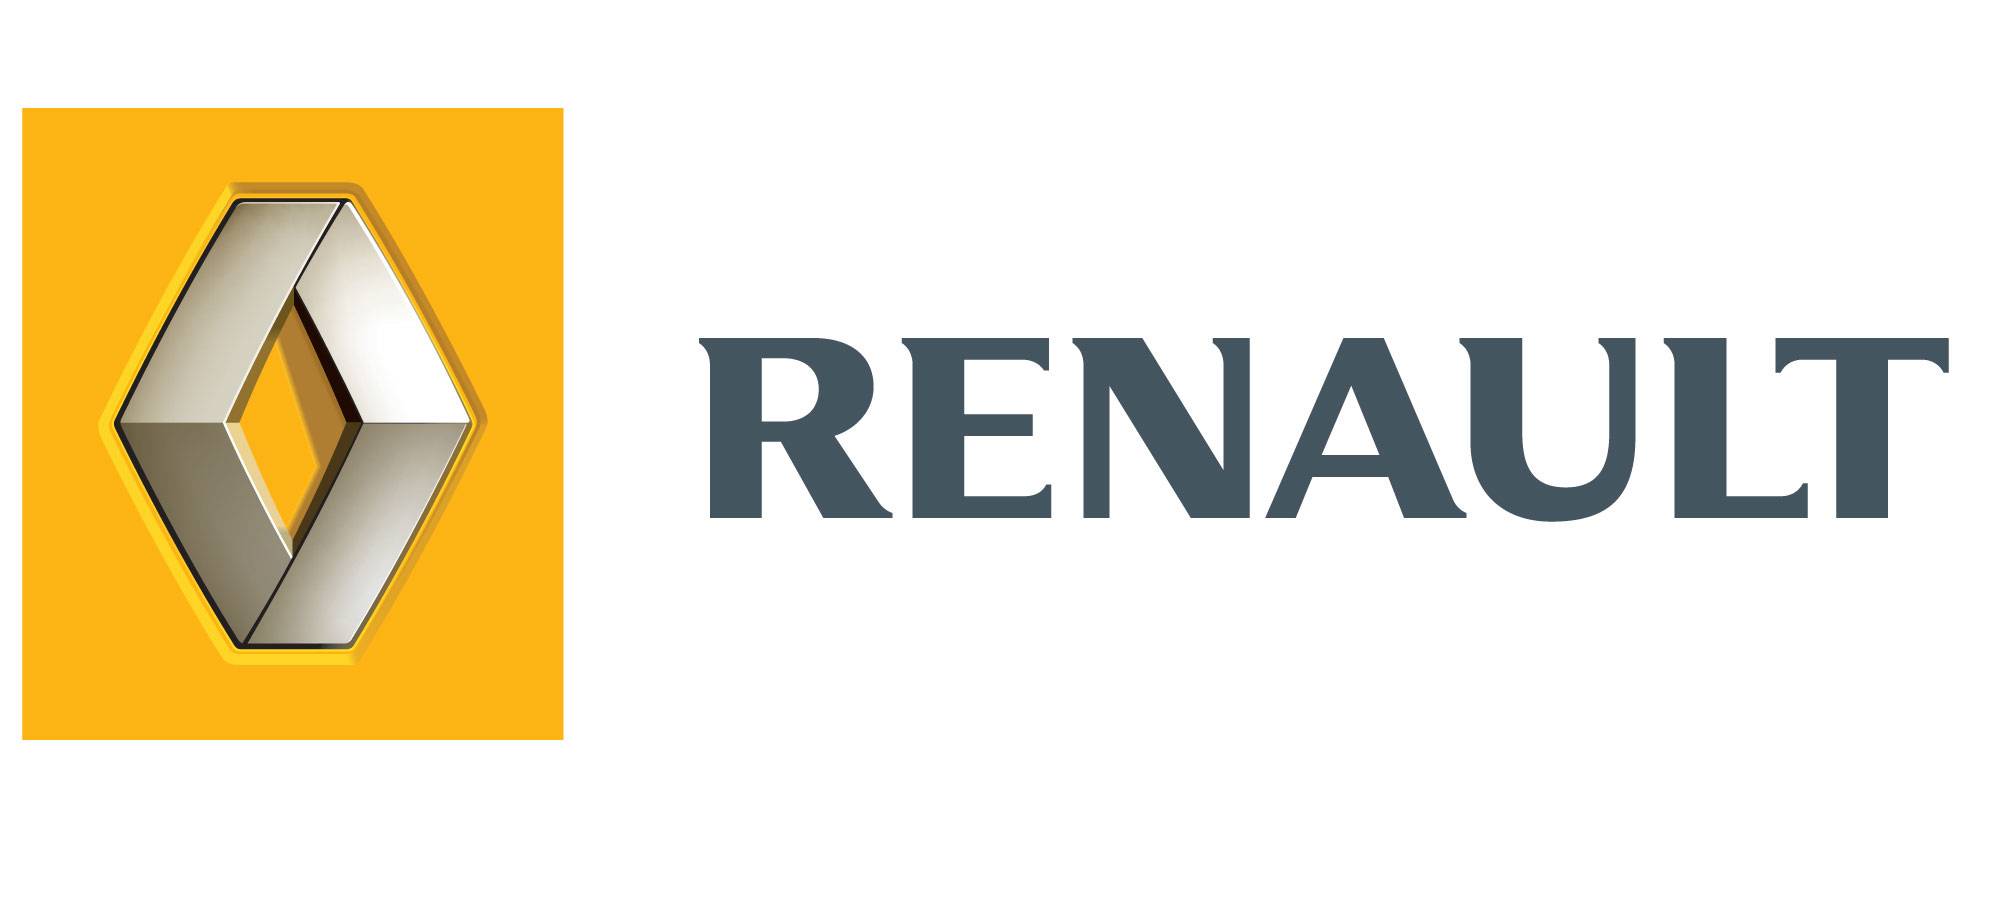 Renault-i do të ndërtojë fabrikë në lidnjen e largët ruse